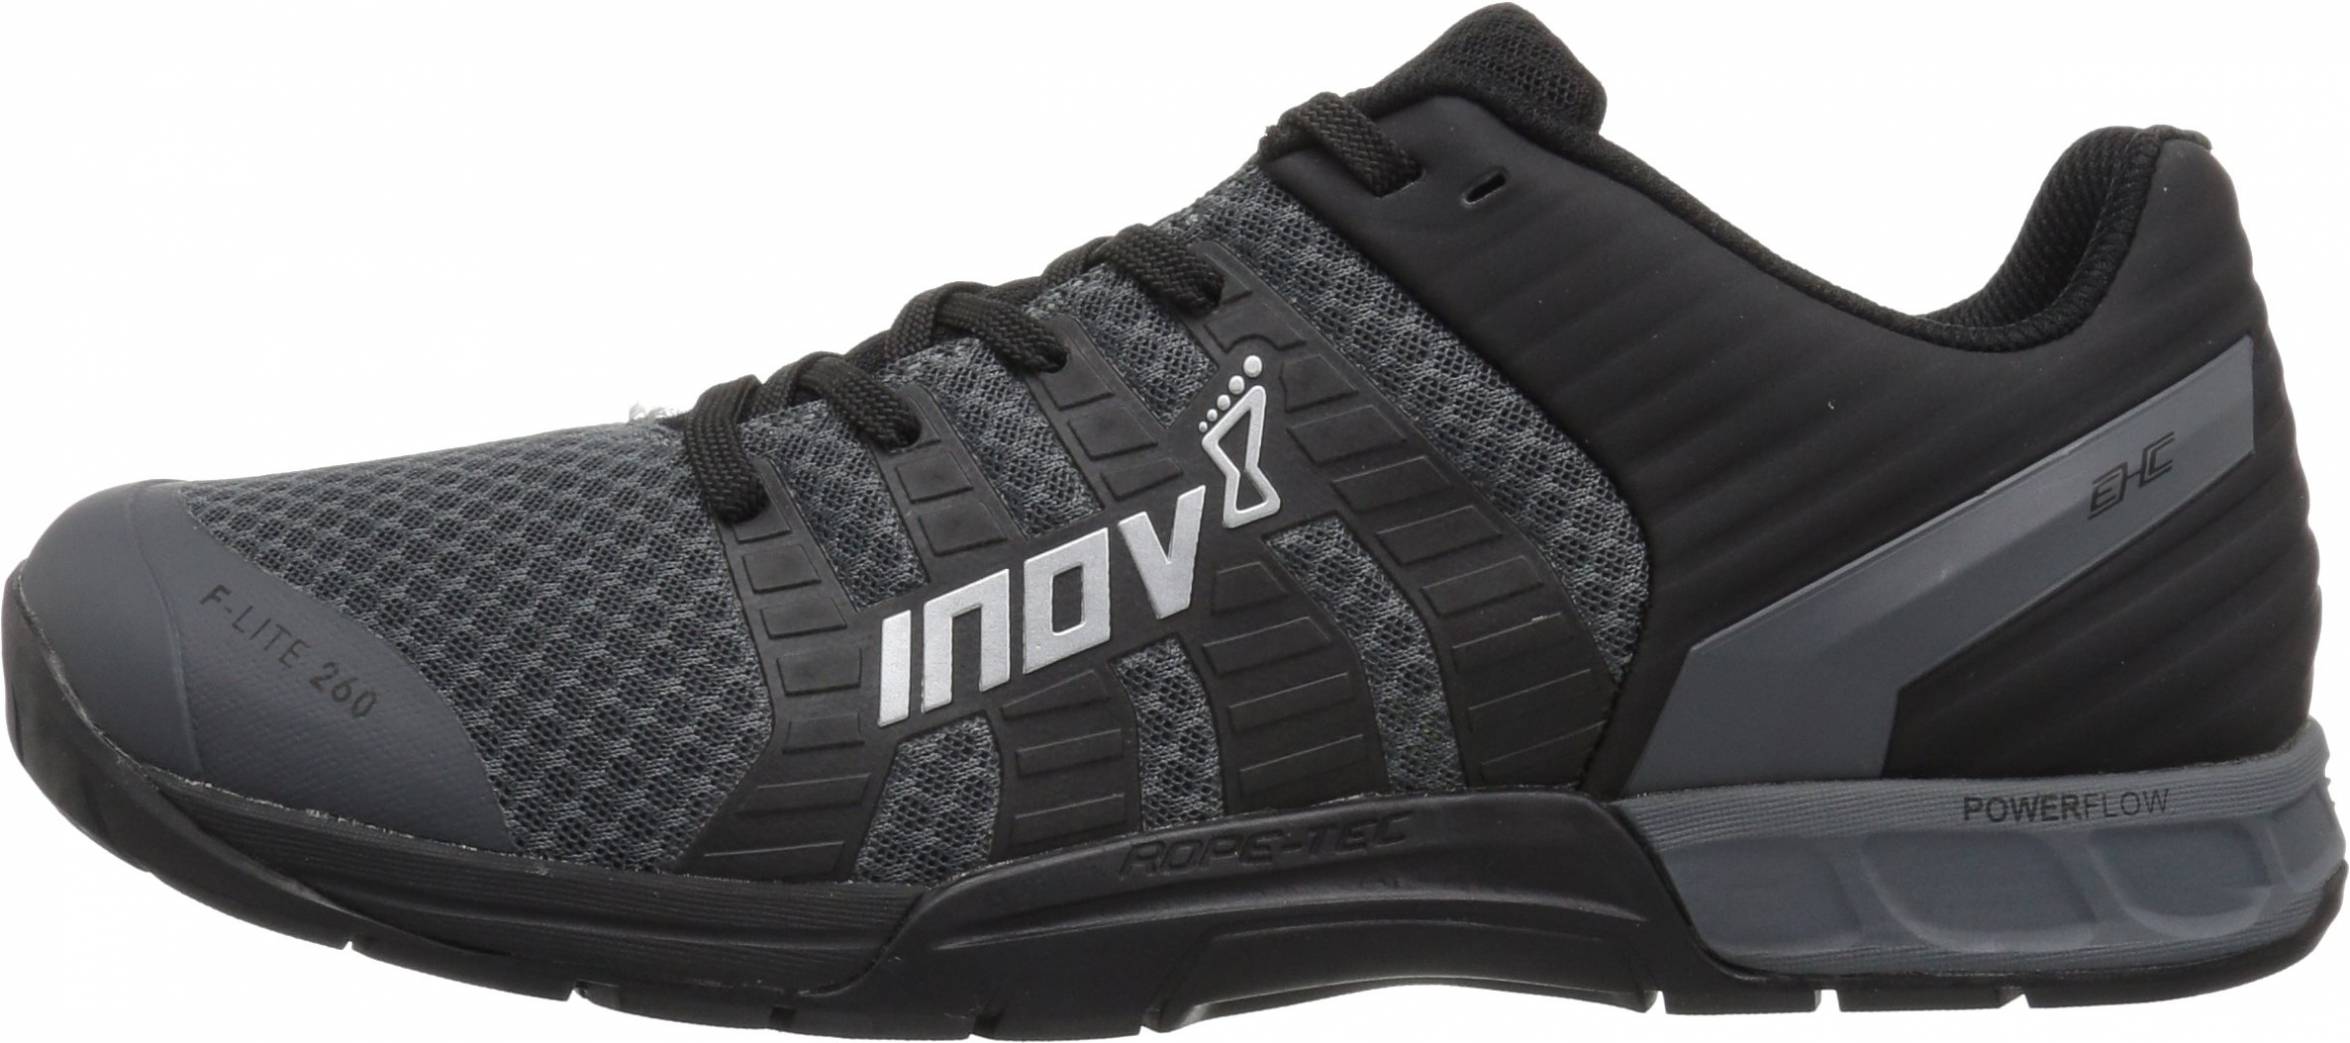 inov8 crossfit shoes